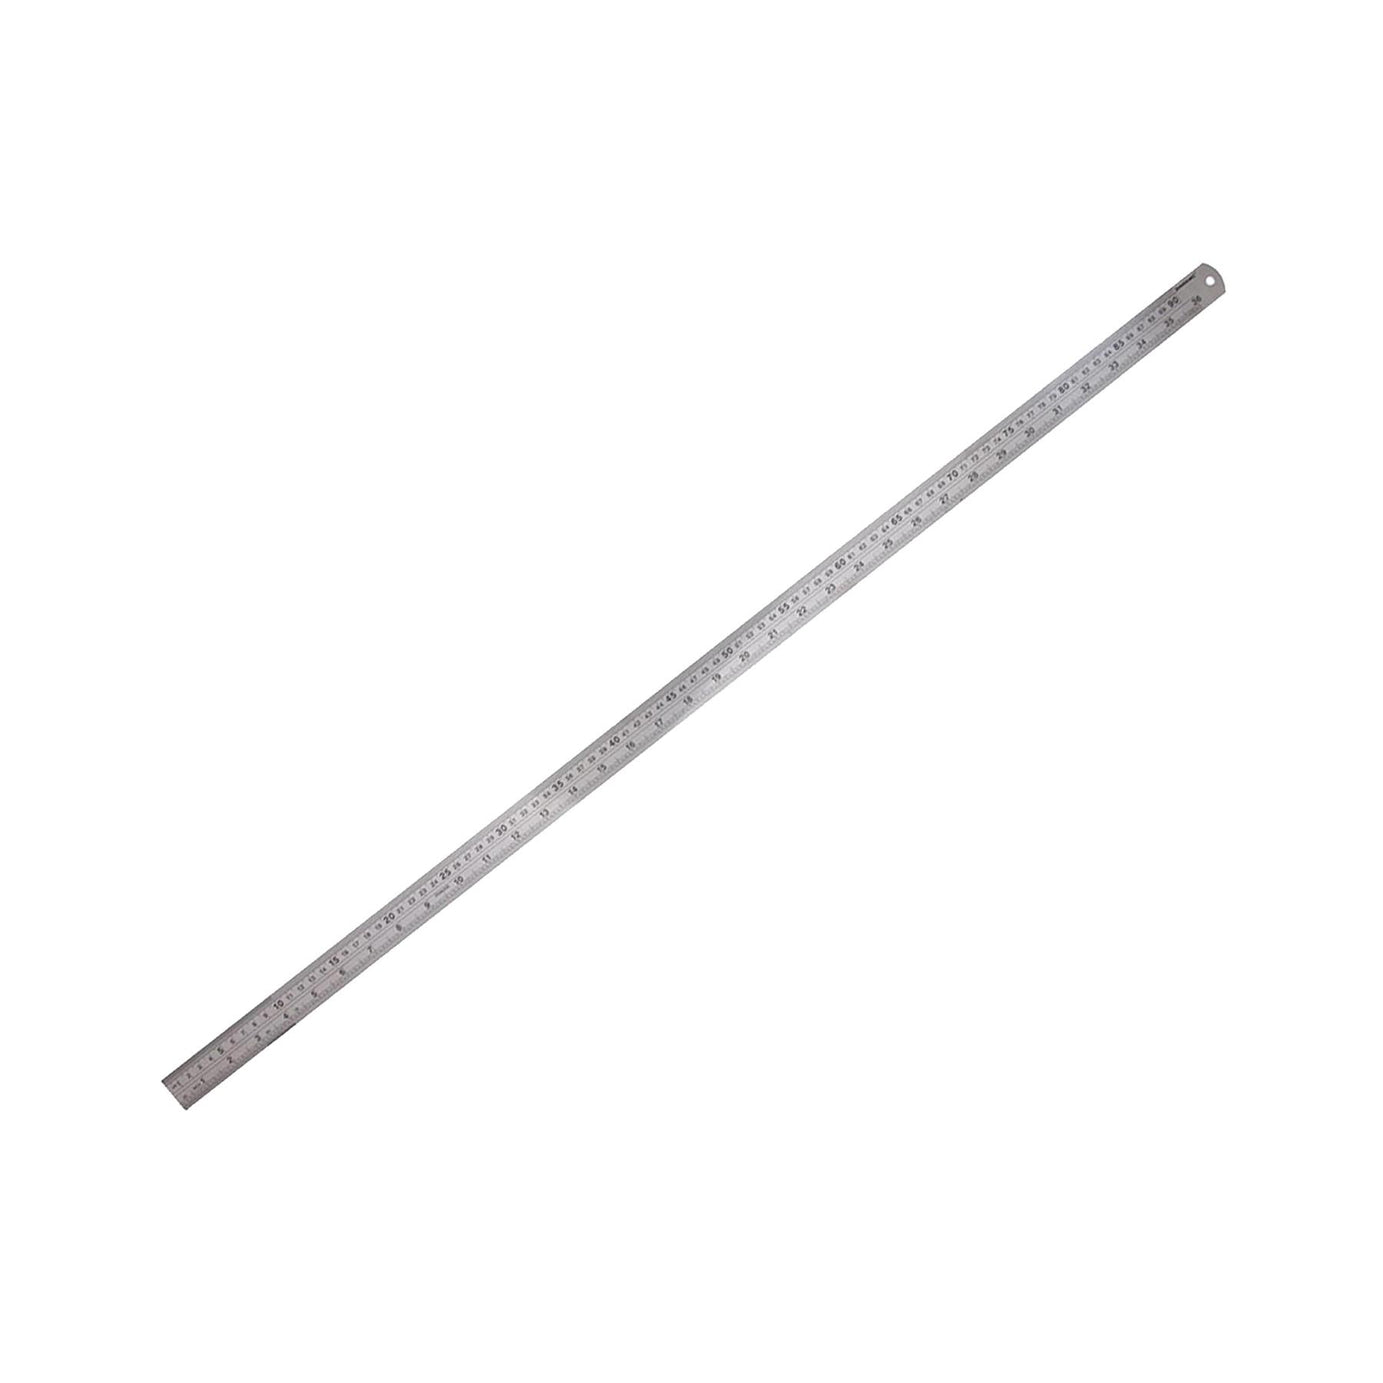 36" 90cm 900mm Stainless Steel Ruler Metal Rule Metric Imperial